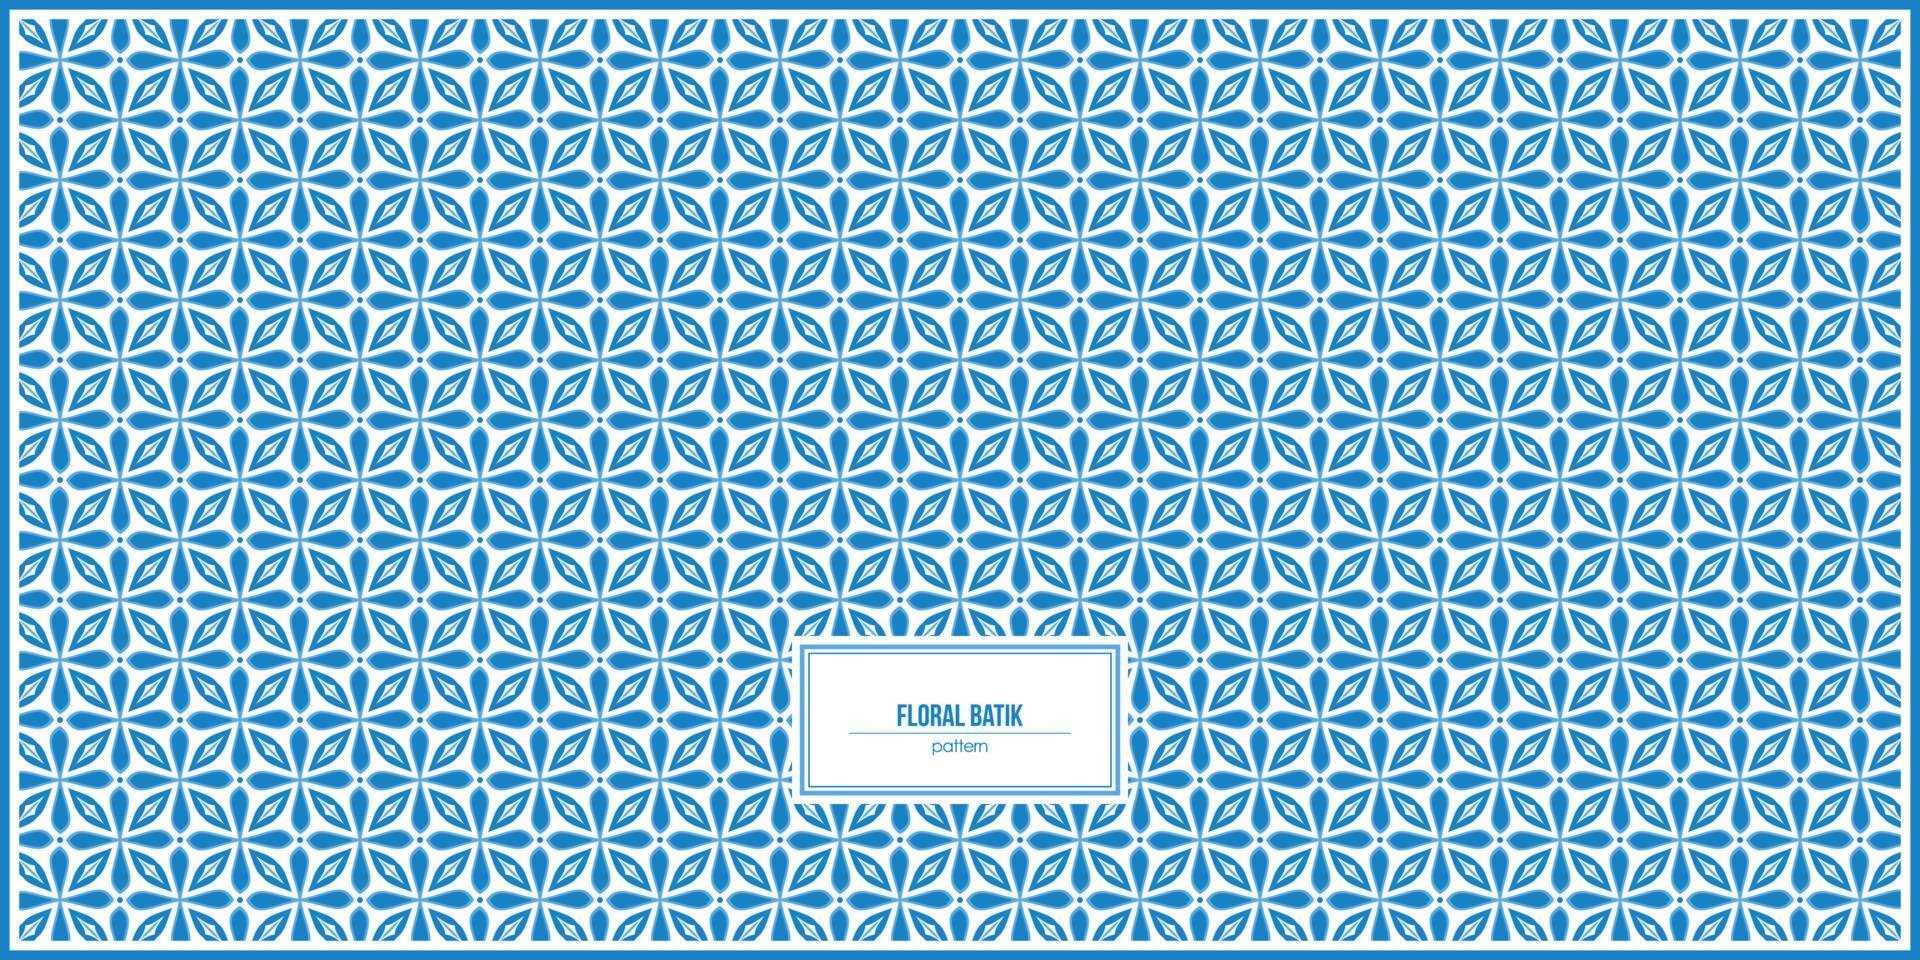 epic blue floral batik design pattern vector